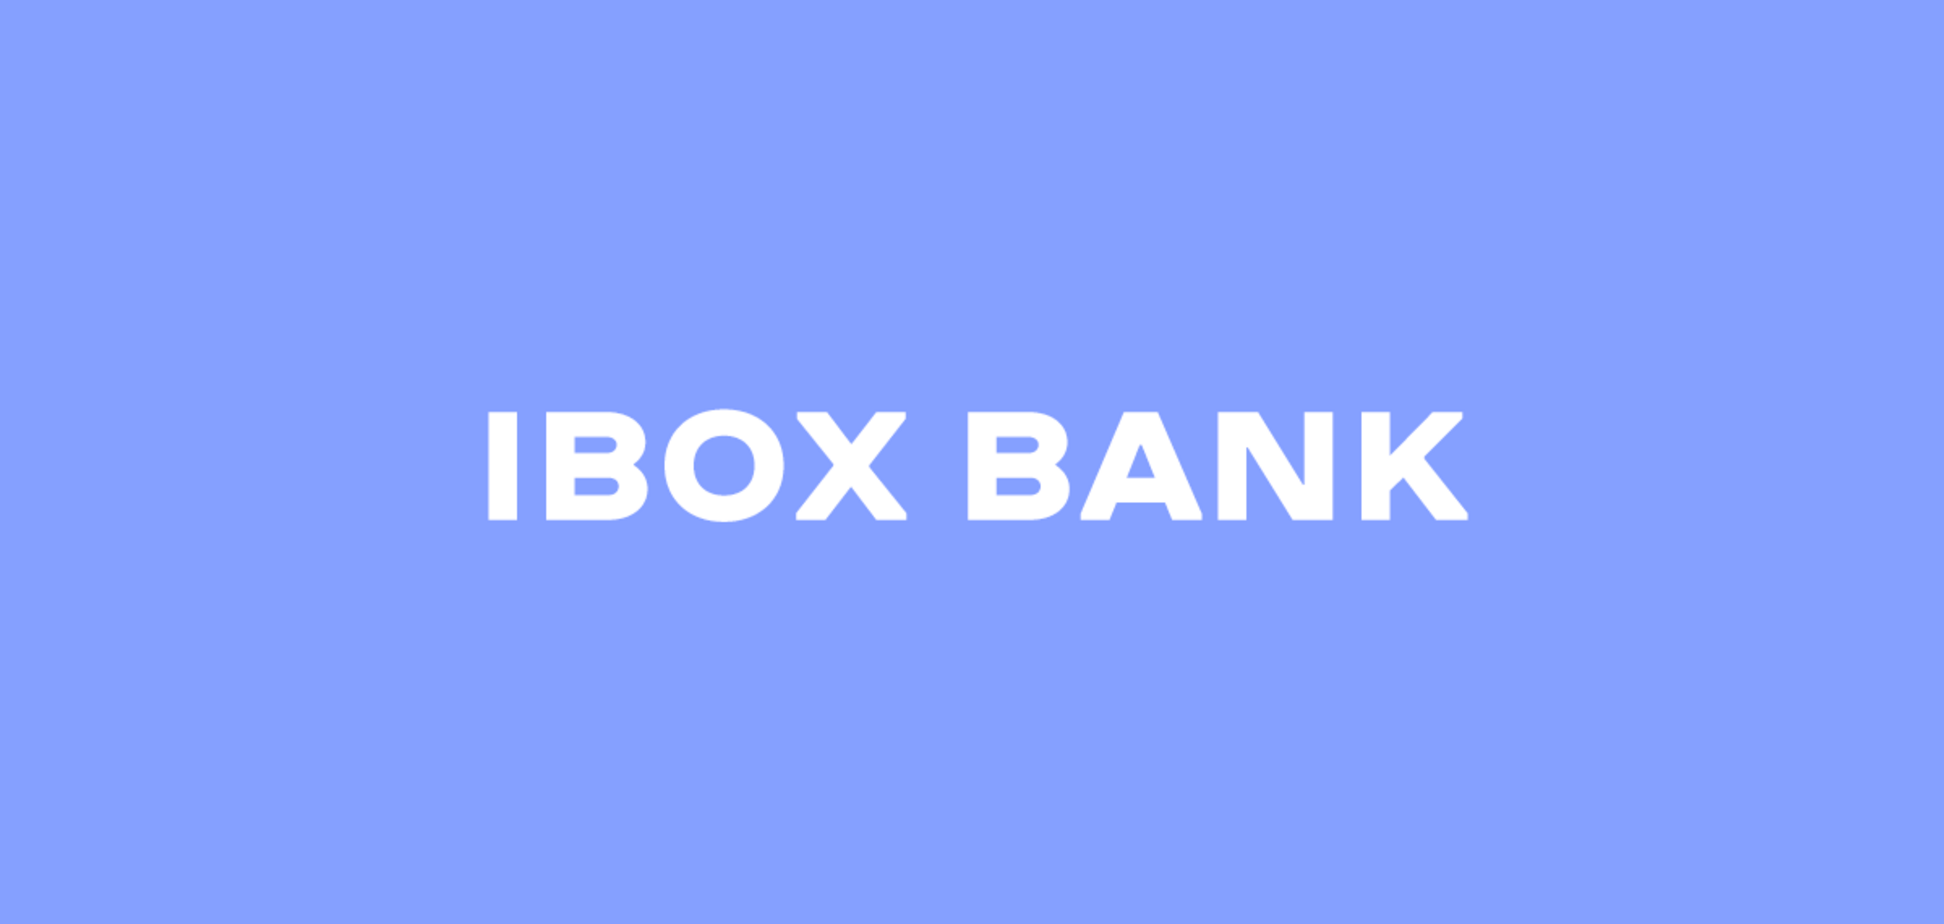 IBOX Bank збільшує статутний капітал до 300 млн грн у II кварталі 2021 року